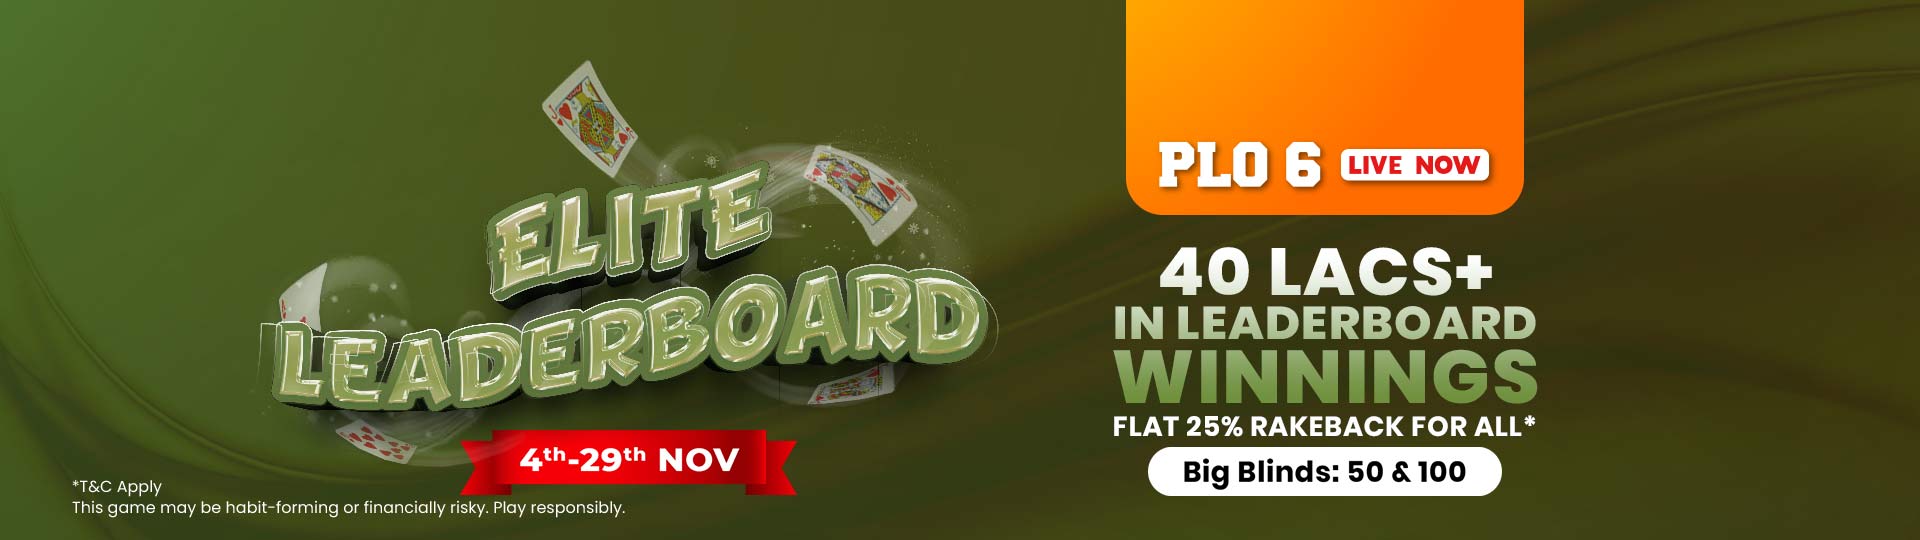 Adda52|Online|Poker|Elite Leaderboards |November